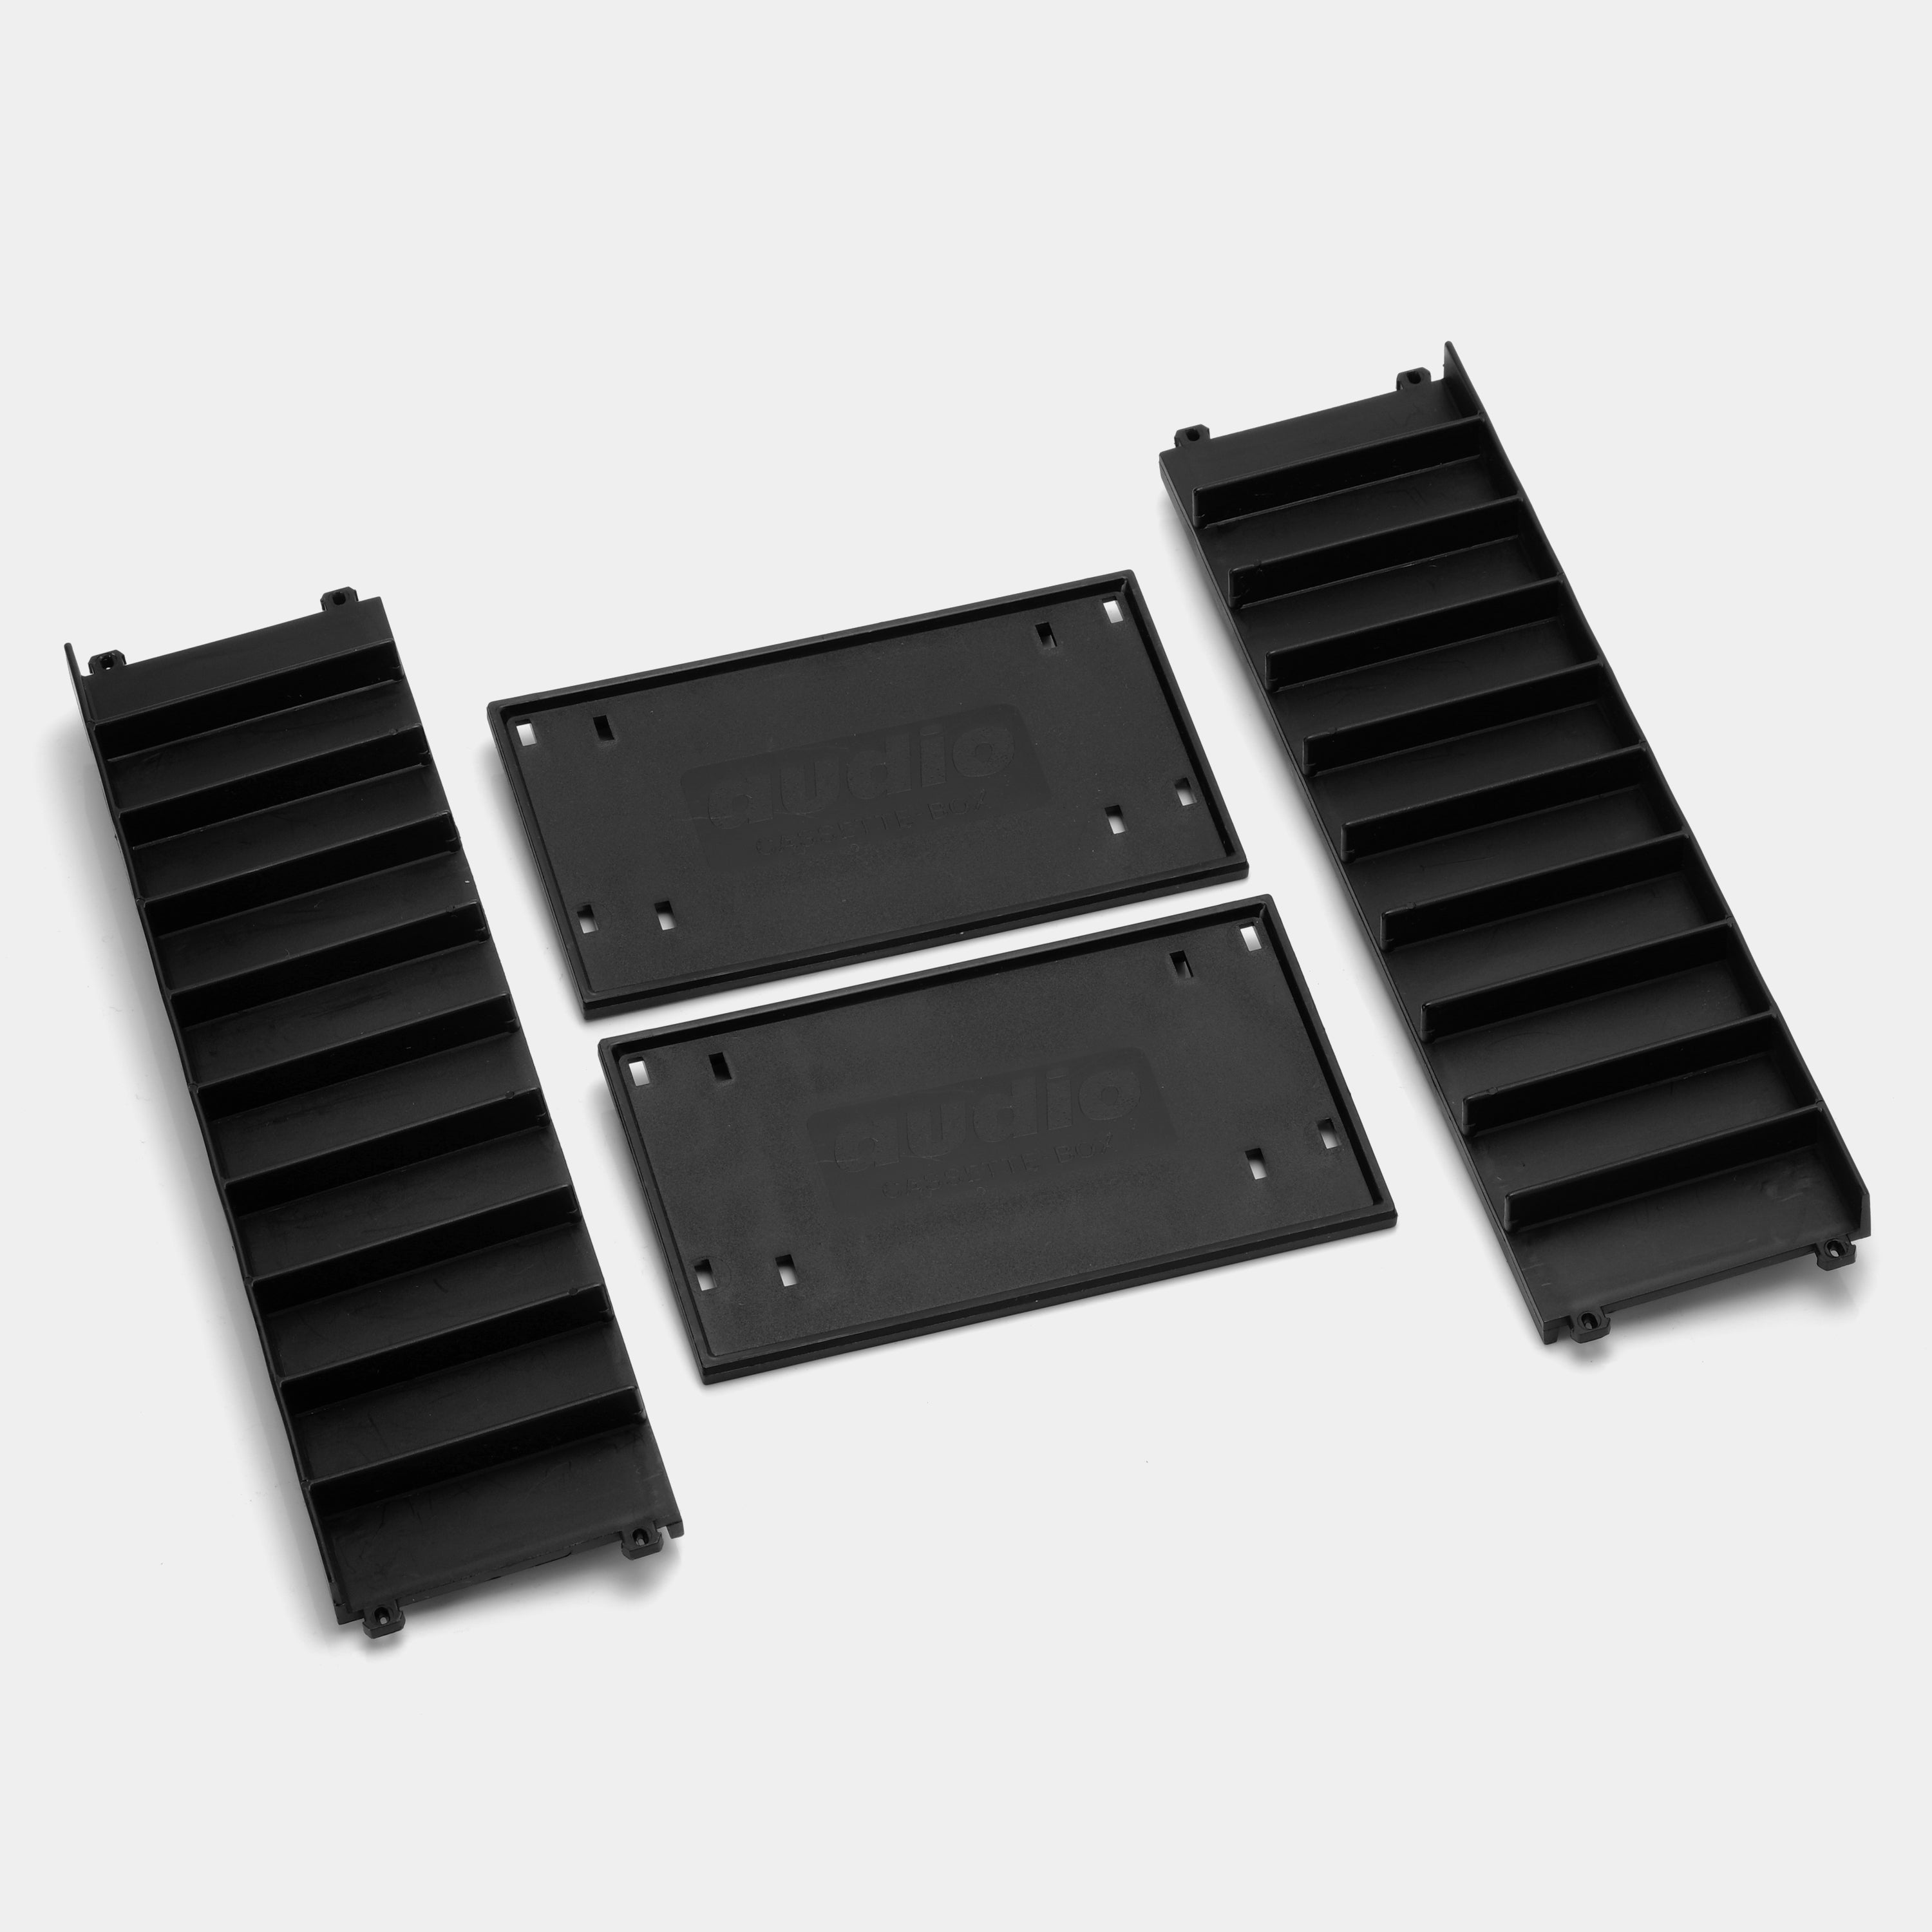 VELCRO-TAPE for Audio Rack Trays or Portable Units — AV Now